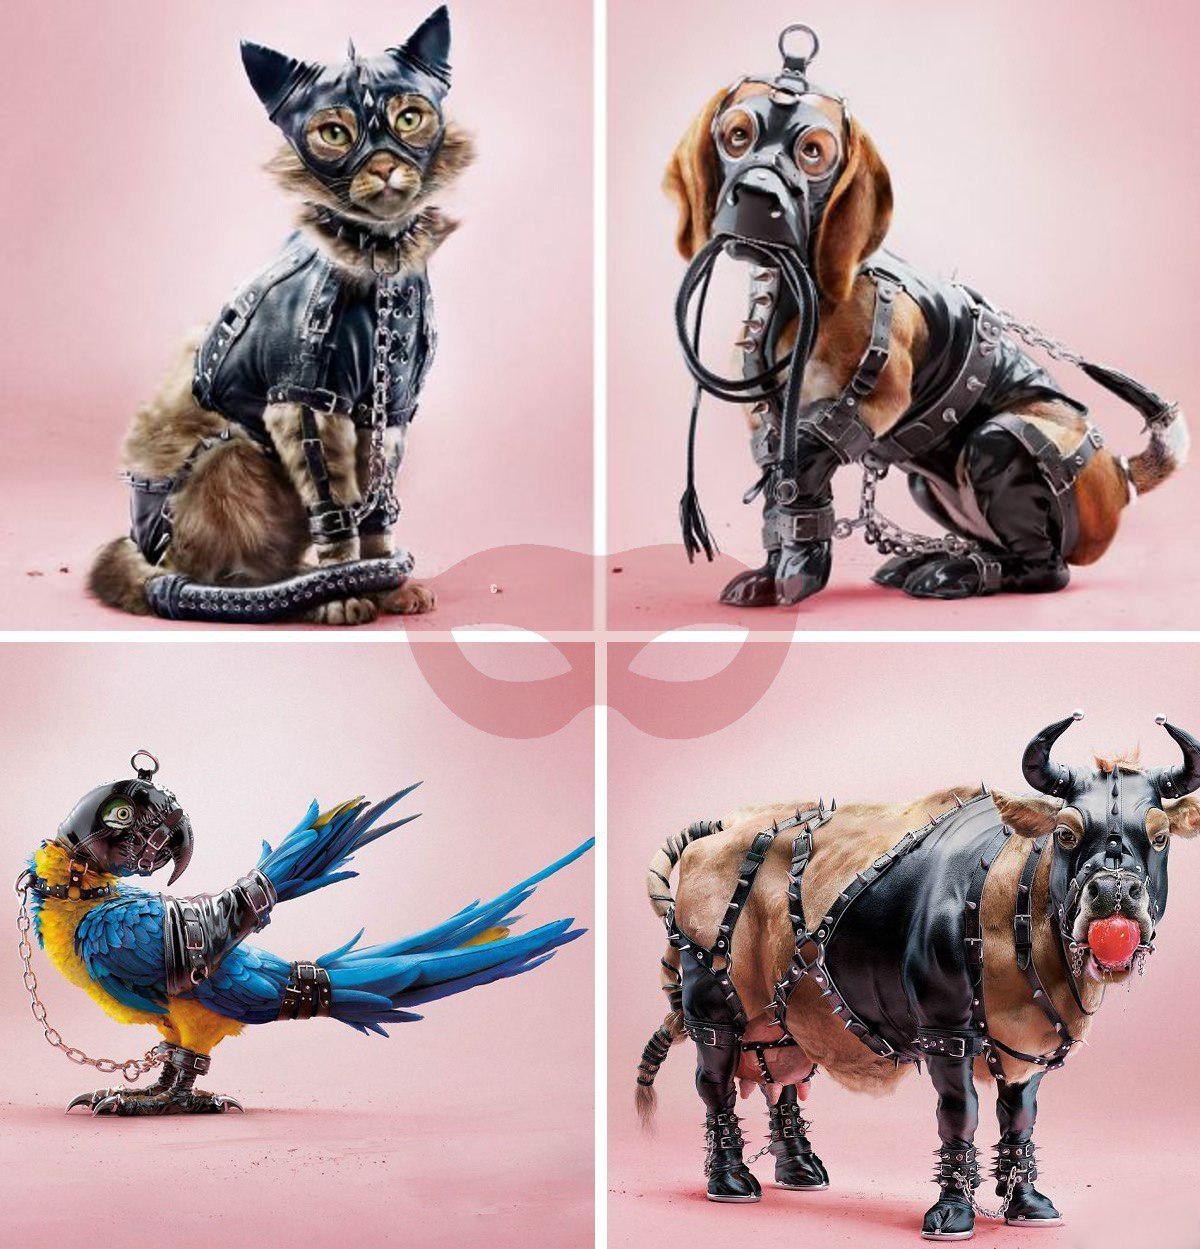 Социальная реклама одела животных в БДСМ-костюмы | Пикабу